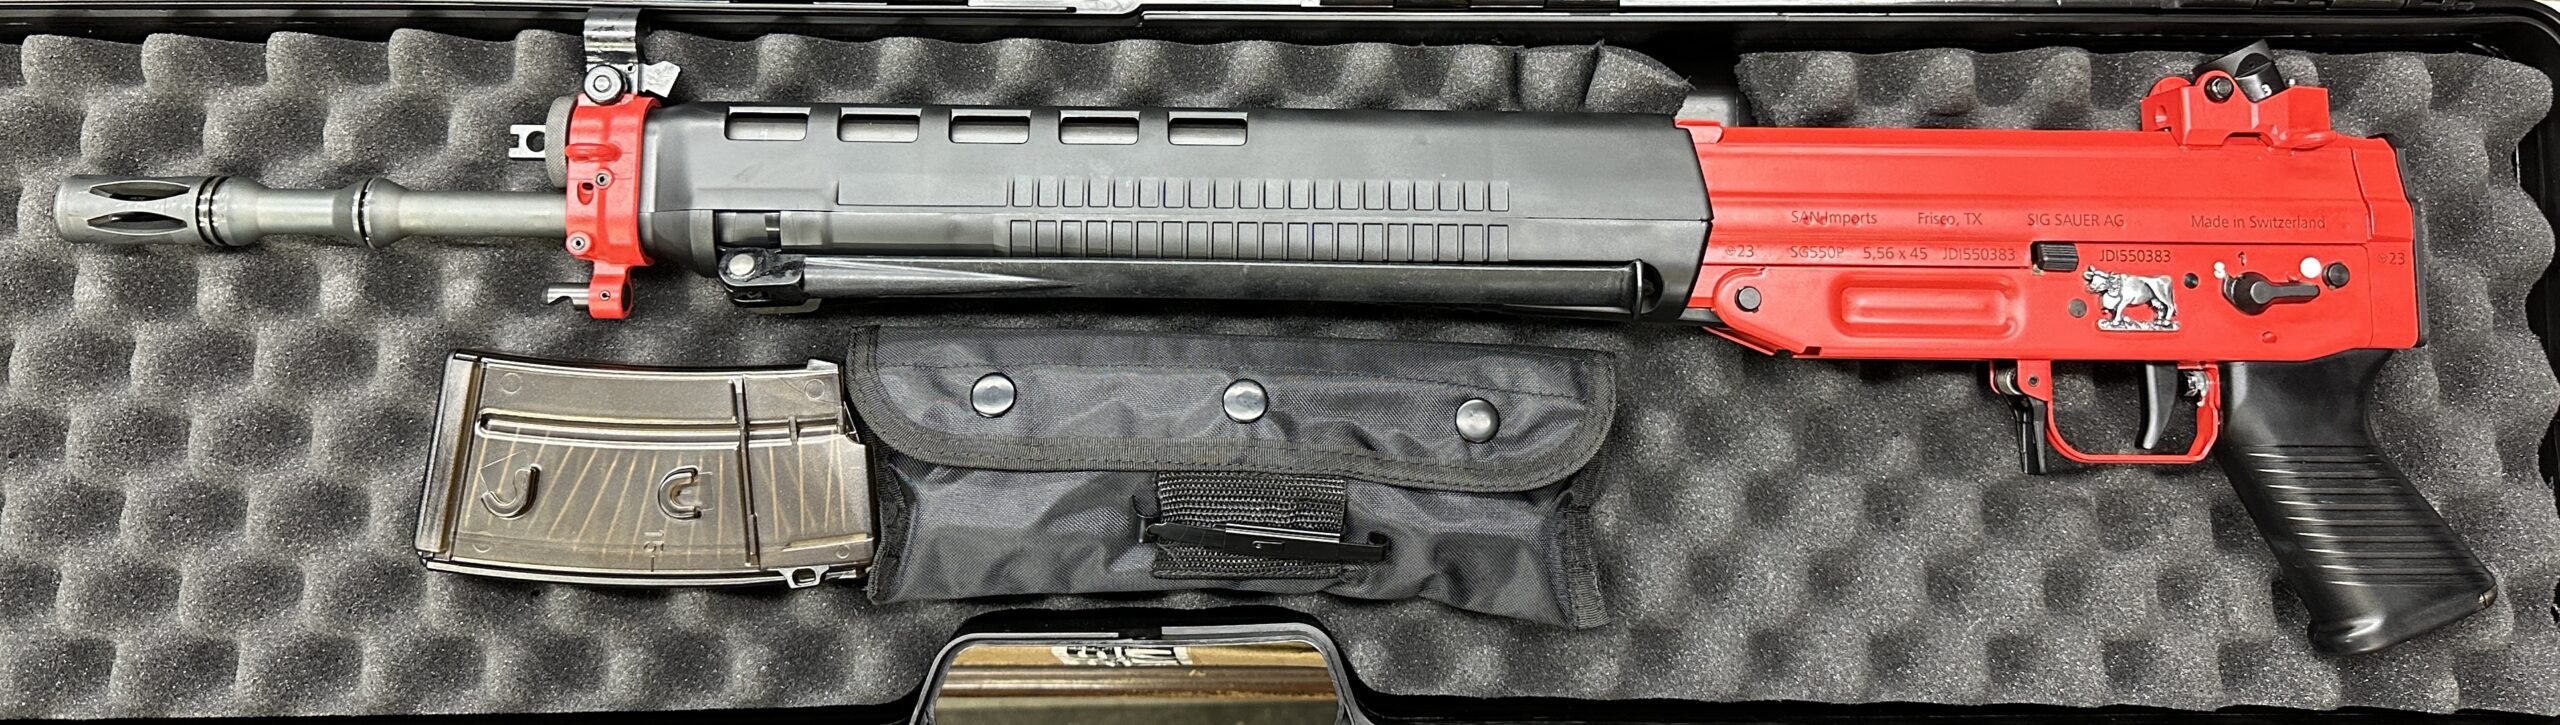 550/PE90 Edelweiss – JDI Firearms,